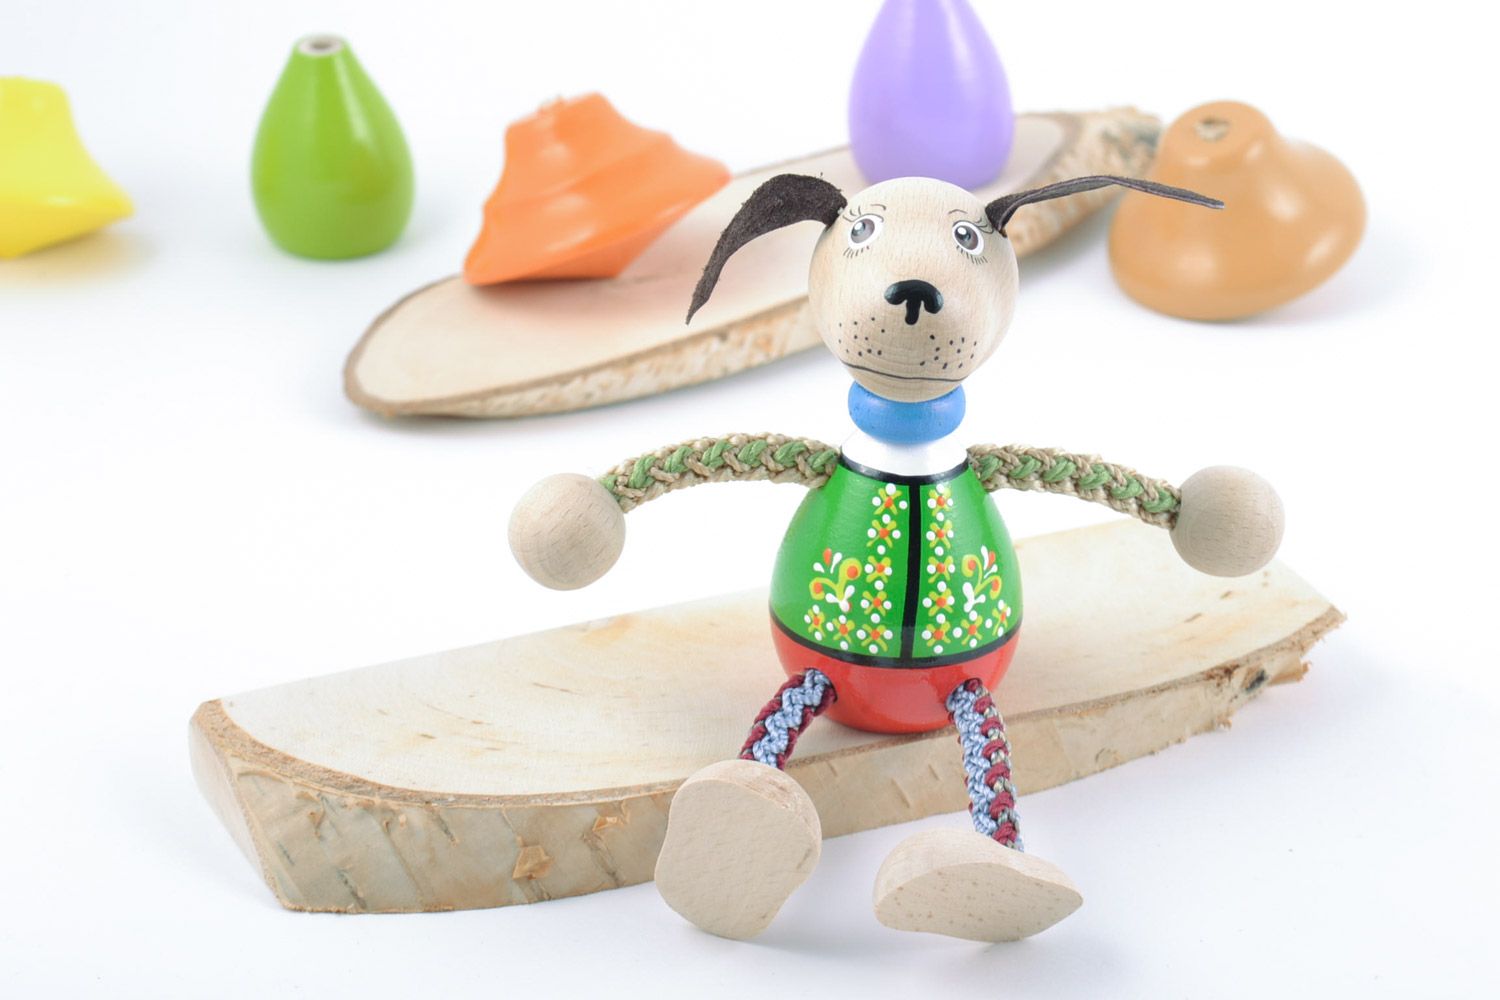 Designer Öko bemaltes kleines interessantes Holz Spielzeug Hund Handarbeit toll  foto 1